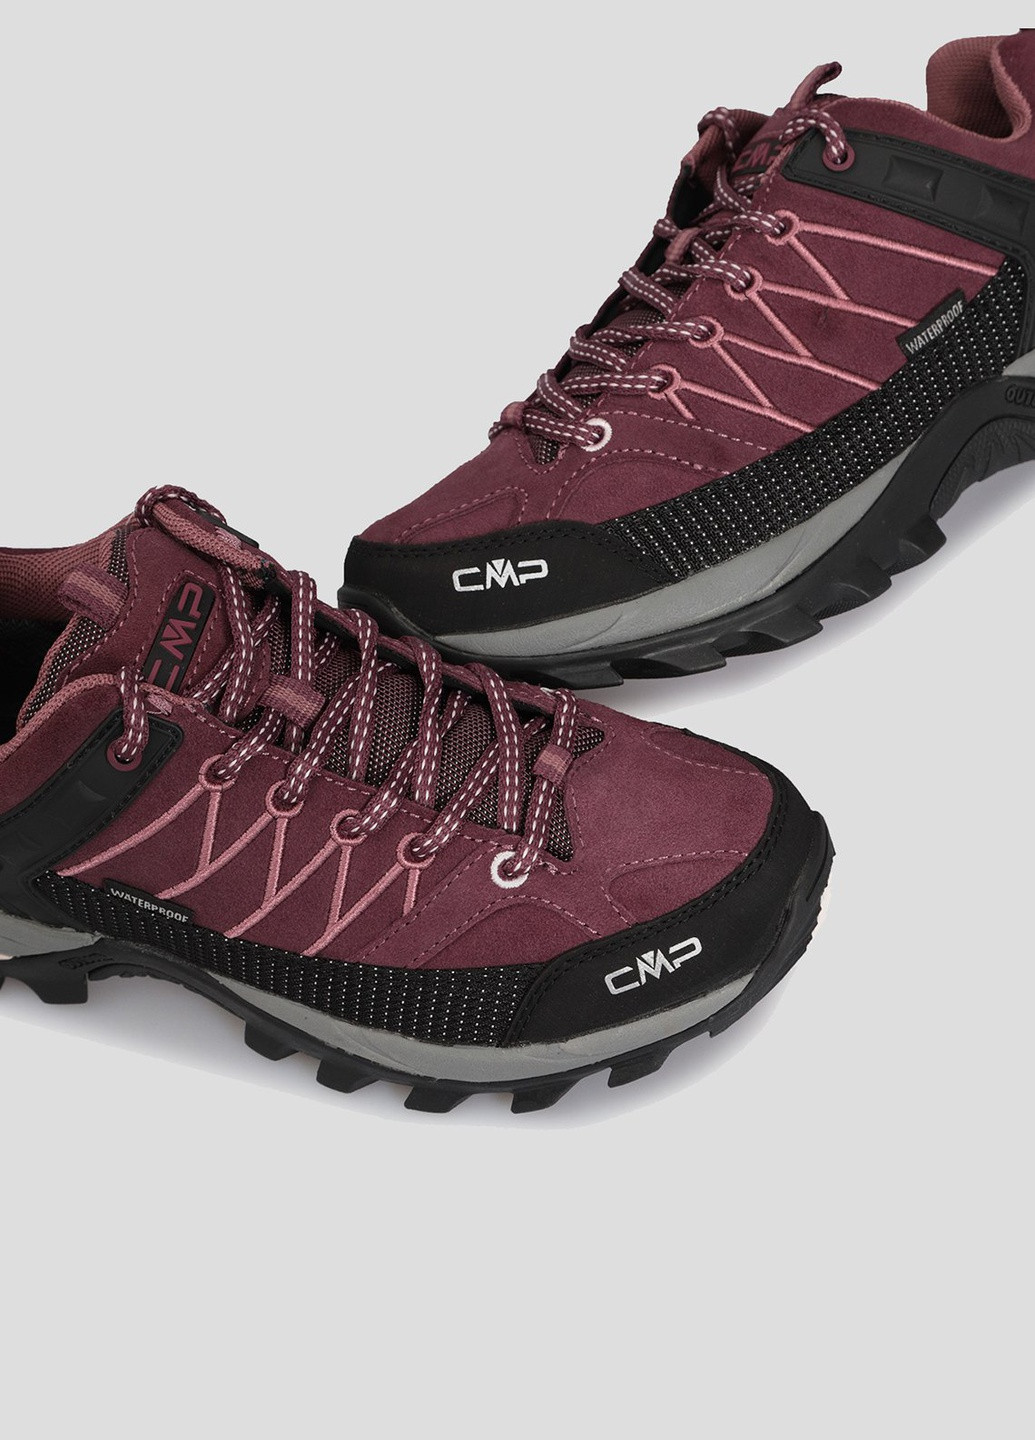 Красные всесезонные бордовые кроссовки для треккинга rigel low wmn trekking shoes w CMP